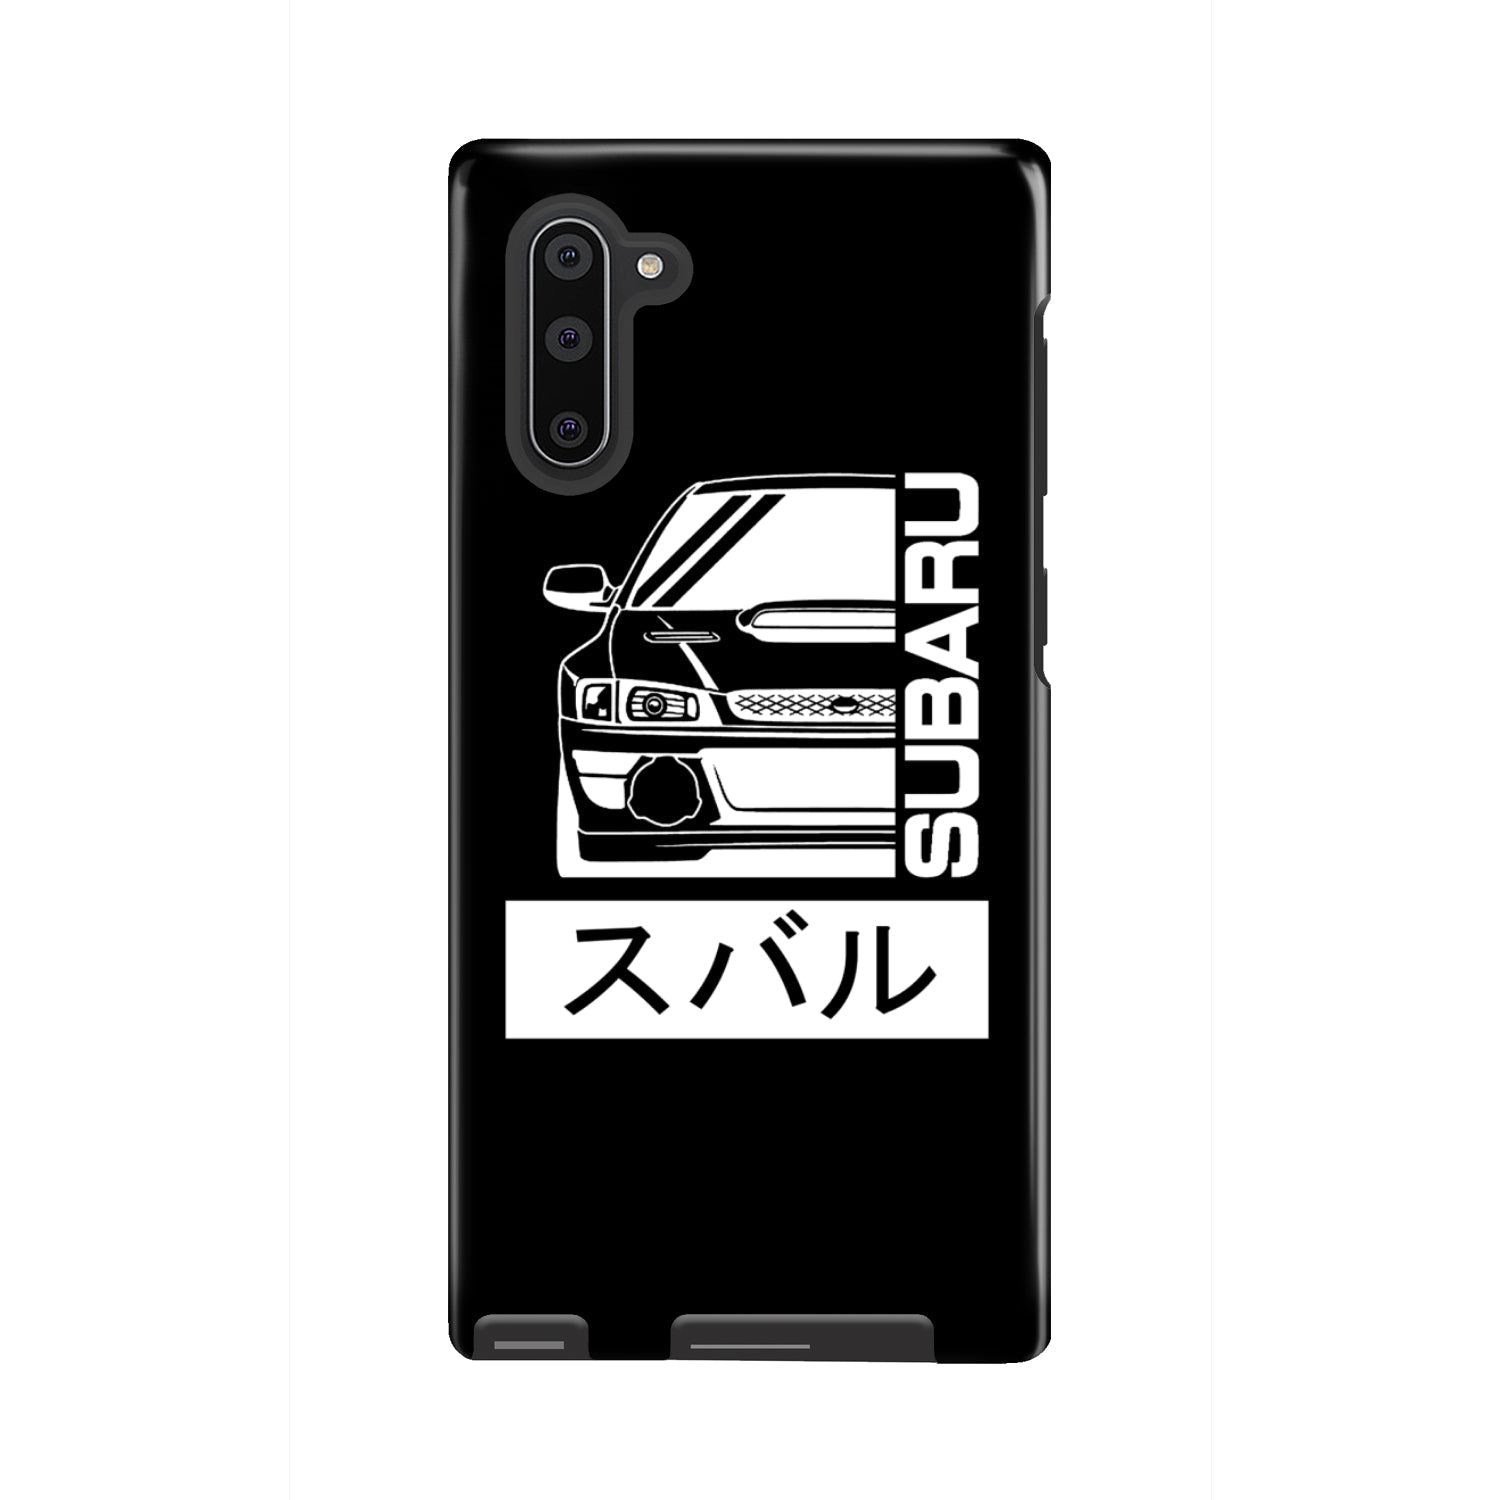 Subaru Gen 1 Phone Case